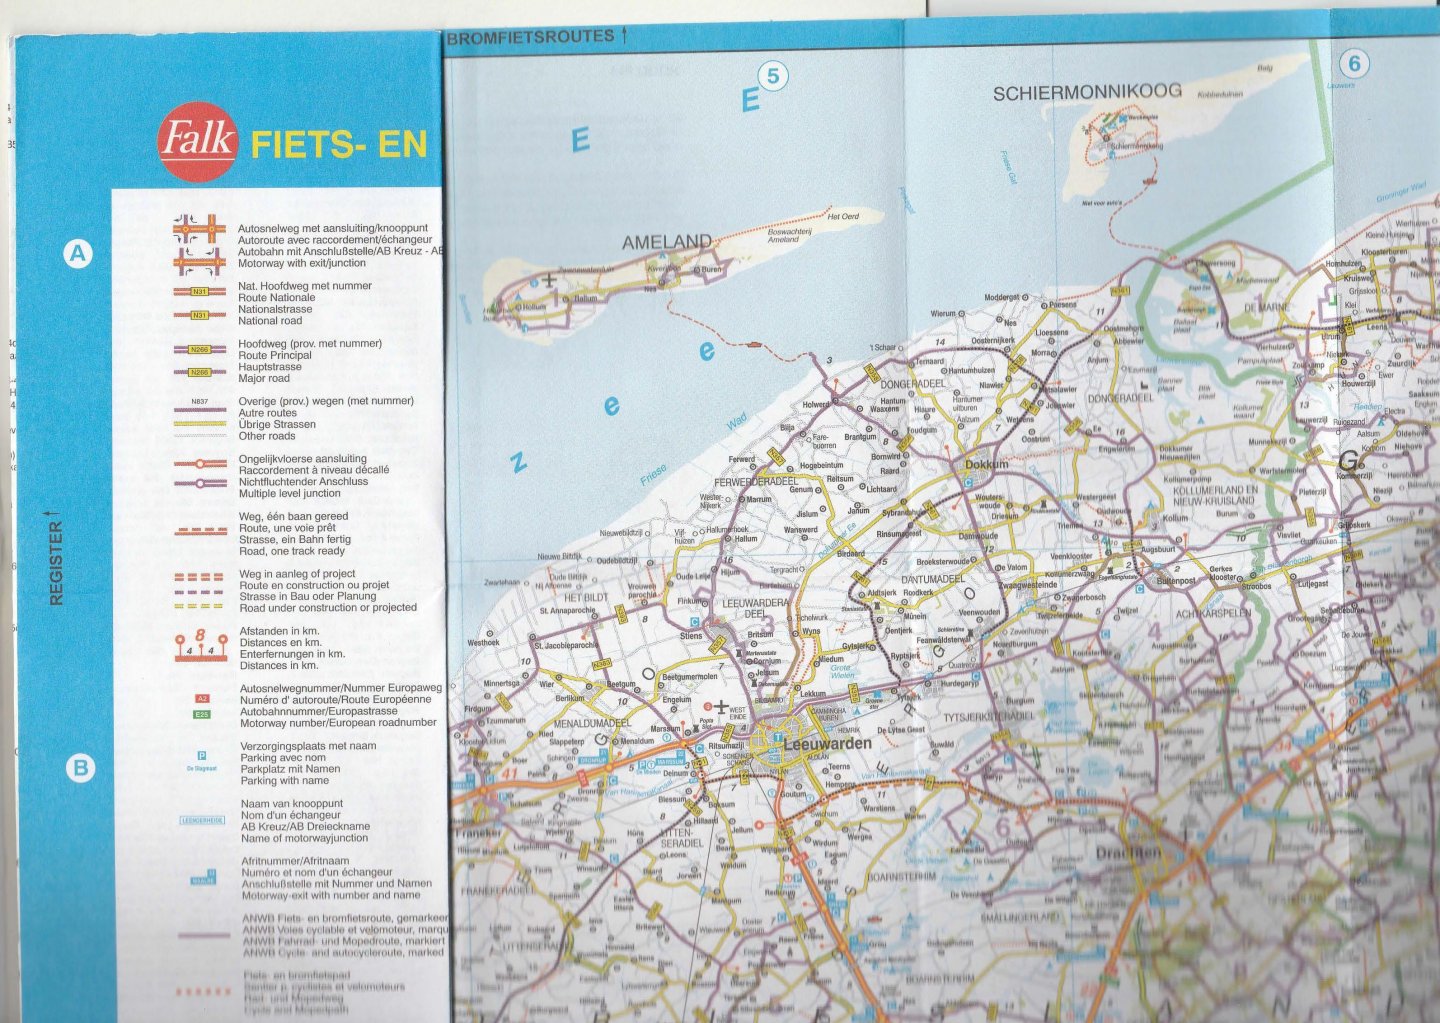  - Fiets- en wegenkaart van Nederland